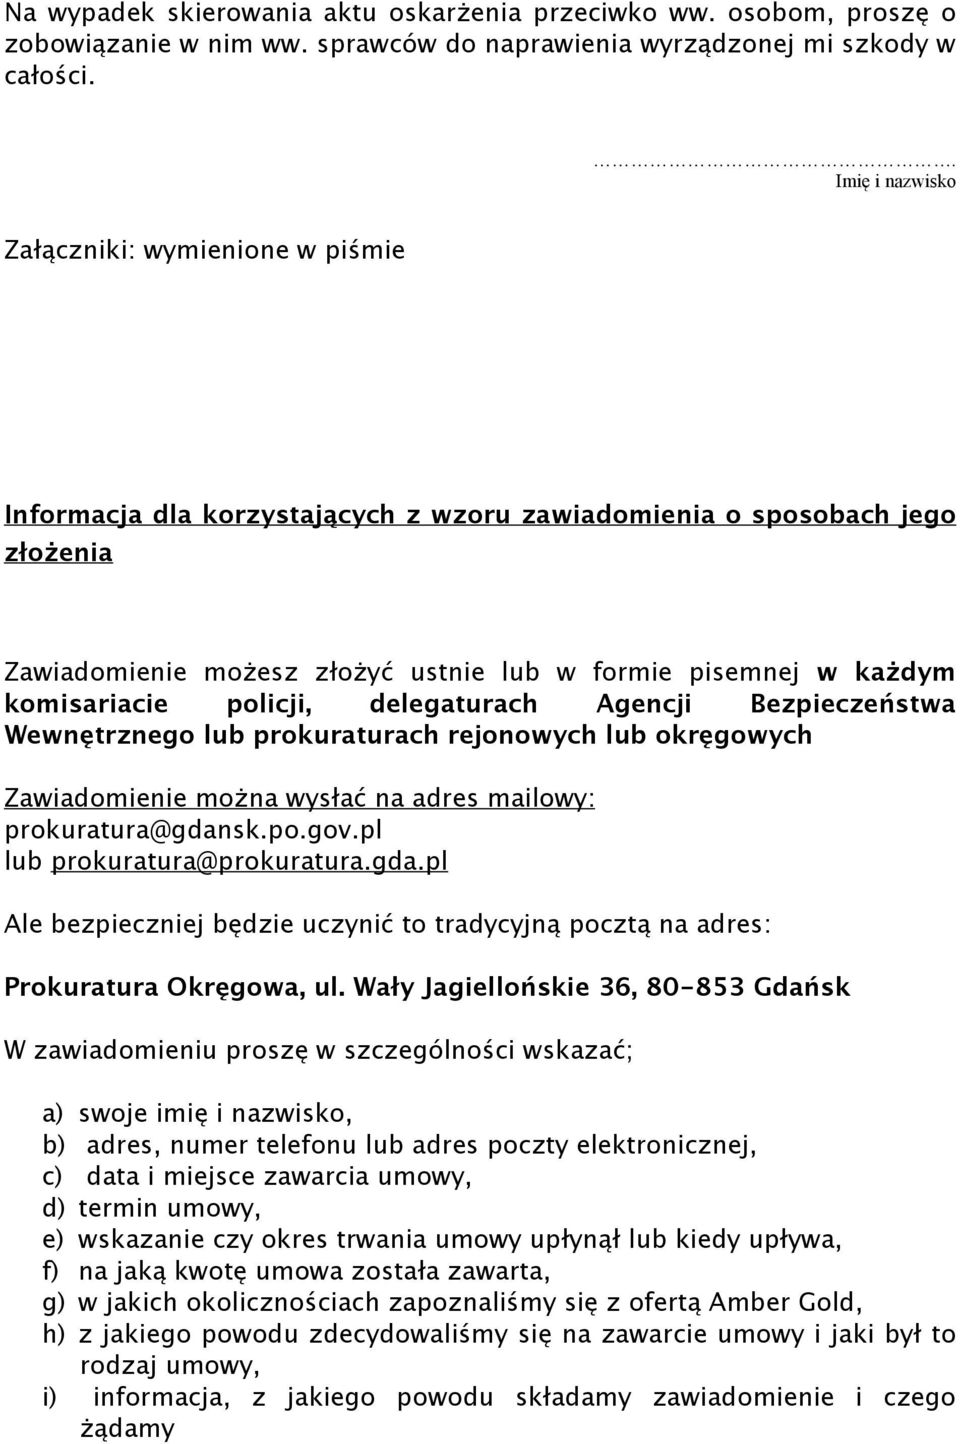 komisariacie policji, delegaturach Agencji Bezpieczeństwa Wewnętrznego lub prokuraturach rejonowych lub okręgowych Zawiadomienie można wysłać na adres mailowy: prokuratura@gdansk.po.gov.